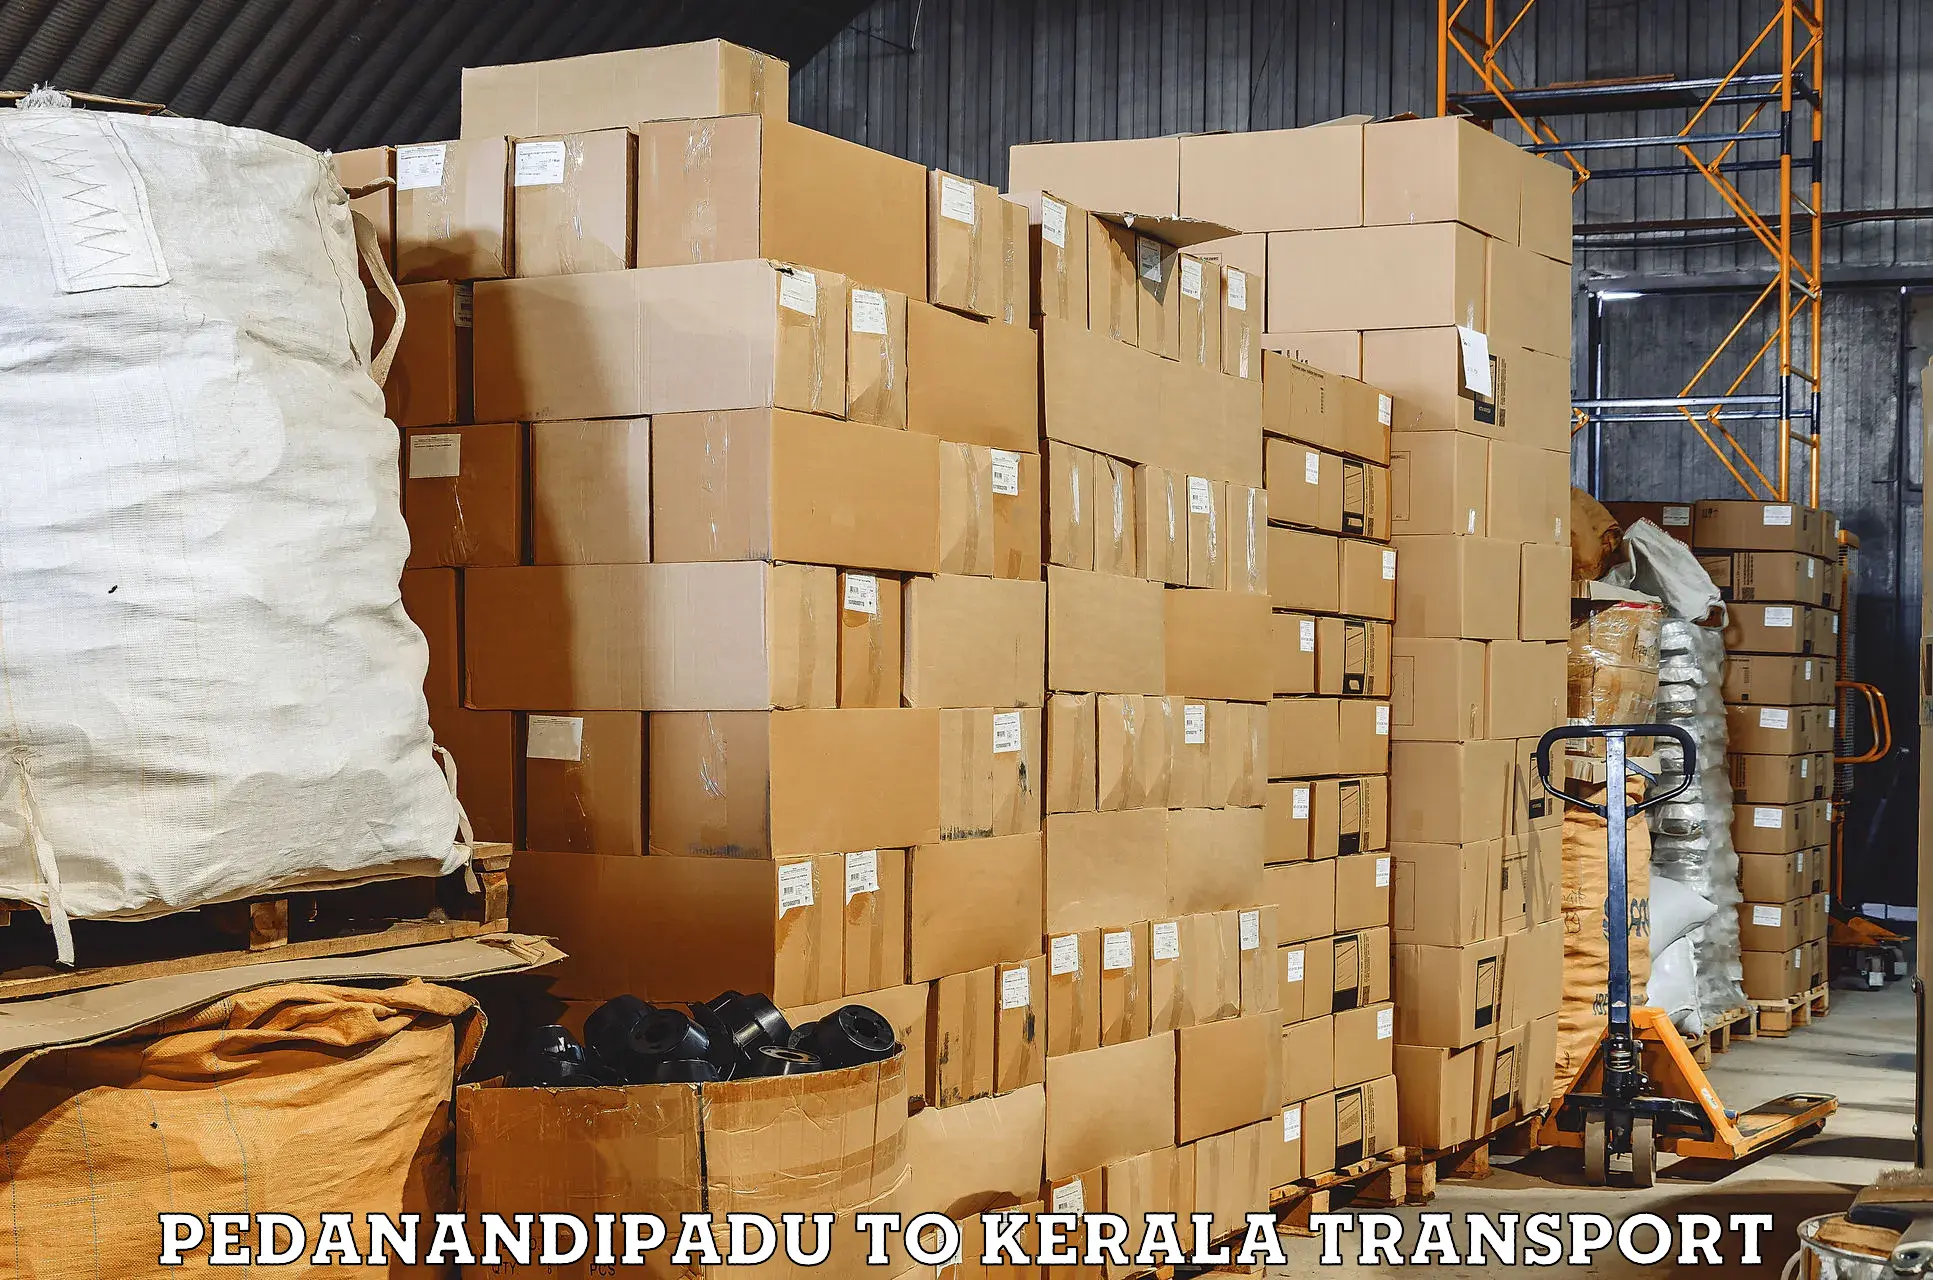 Transport in sharing Pedanandipadu to Kerala